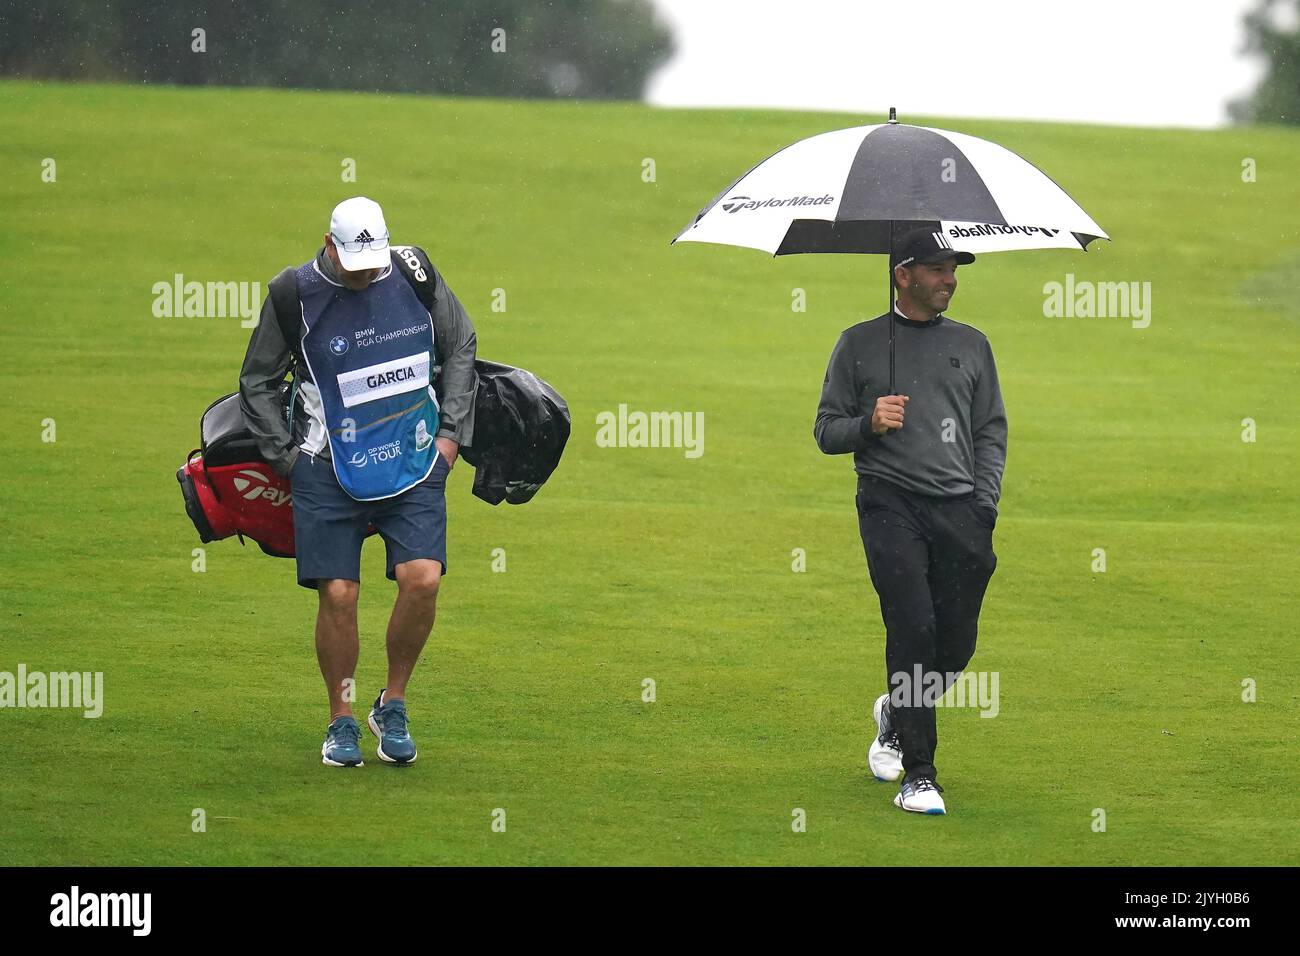 Der Spanier Sergio Garcia (rechts) mit seinem Caddy Glen Murray auf dem Fairway 5., als es am ersten Tag der BMW PGA Championship im Wentworth Golf Club, Virginia Water, regnet. Bilddatum: Donnerstag, 8. September 2022. Stockfoto